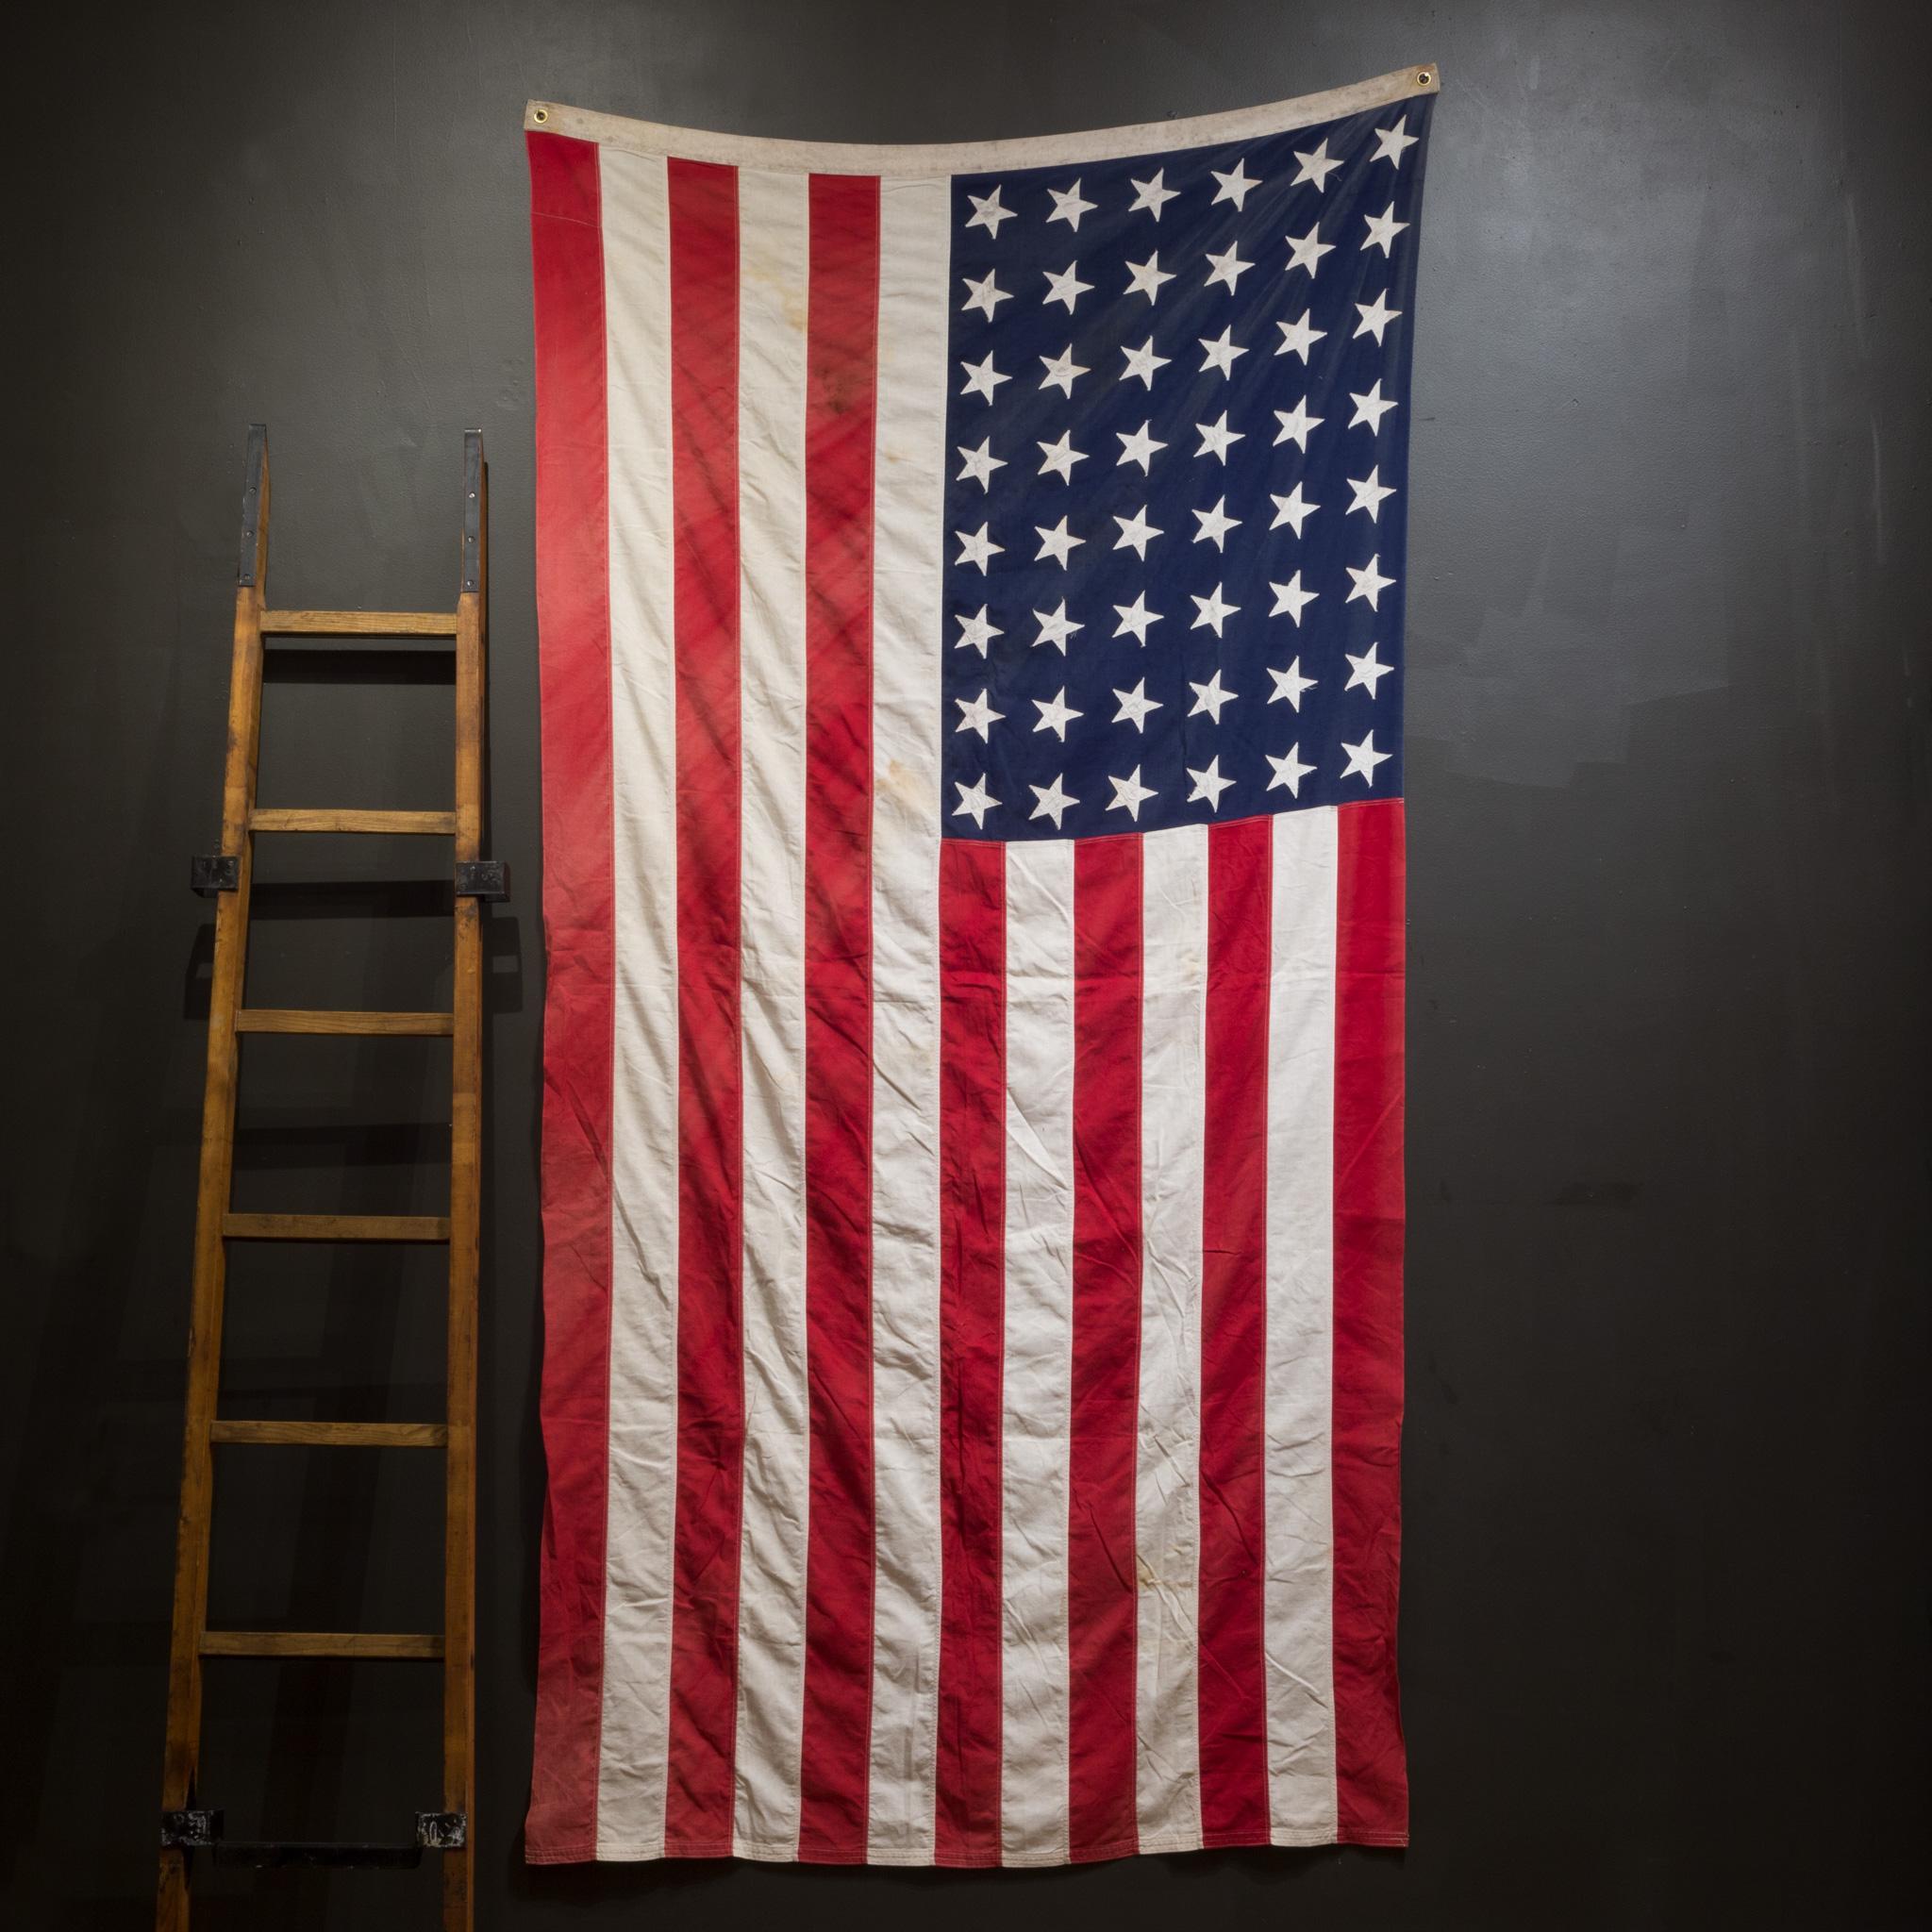 À propos de

Il s'agit d'un drapeau américain monumental original composé de 48 étoiles et rayures cousues à la main. Il est en bon état et possède des œillets en laiton pour le suspendre.

Créateur inconnu.
Date de fabrication